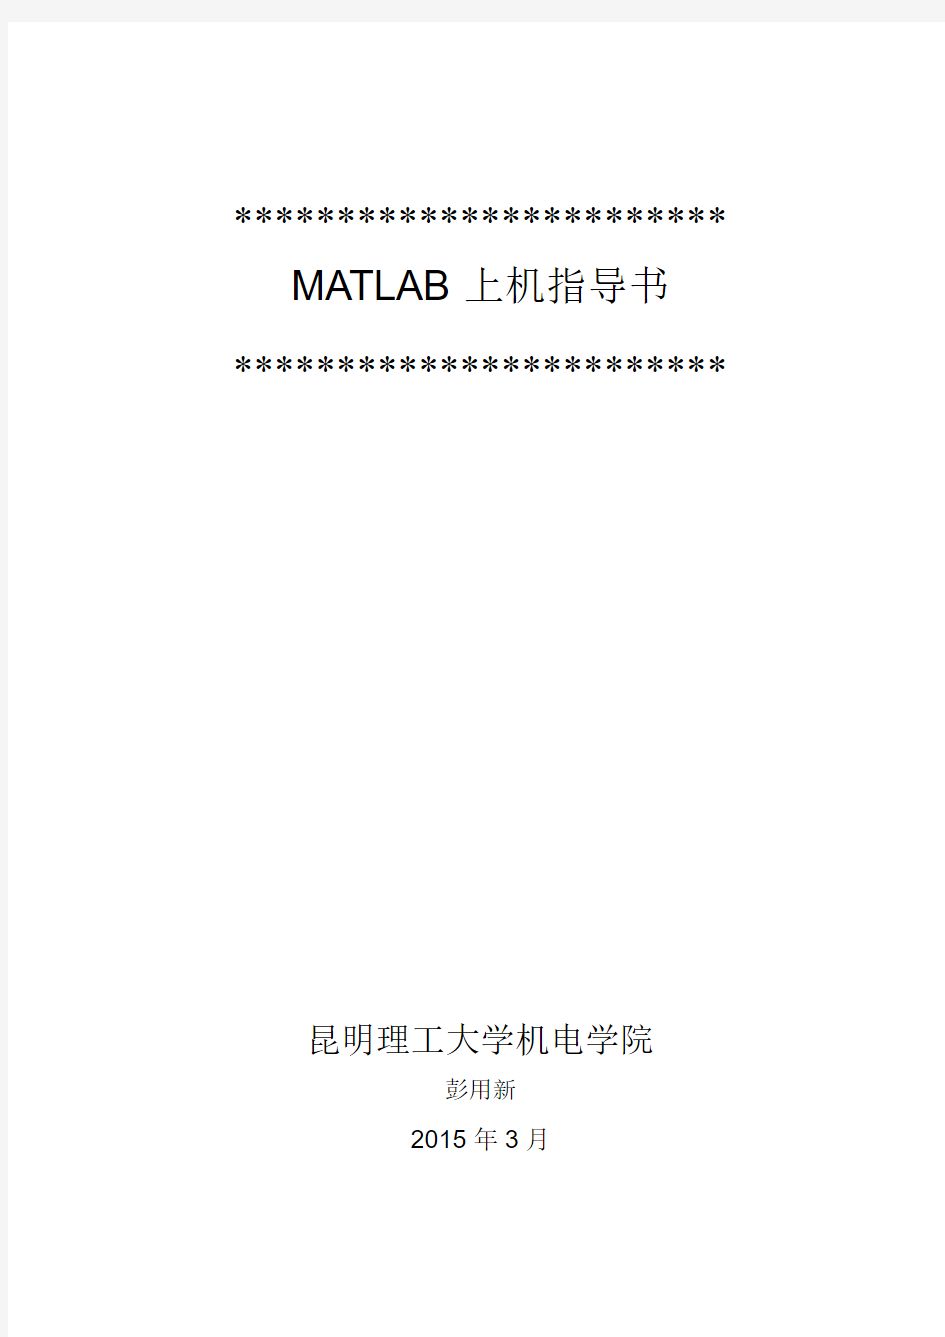 昆明理工大学MATLAB实验指导书(第二次实验)